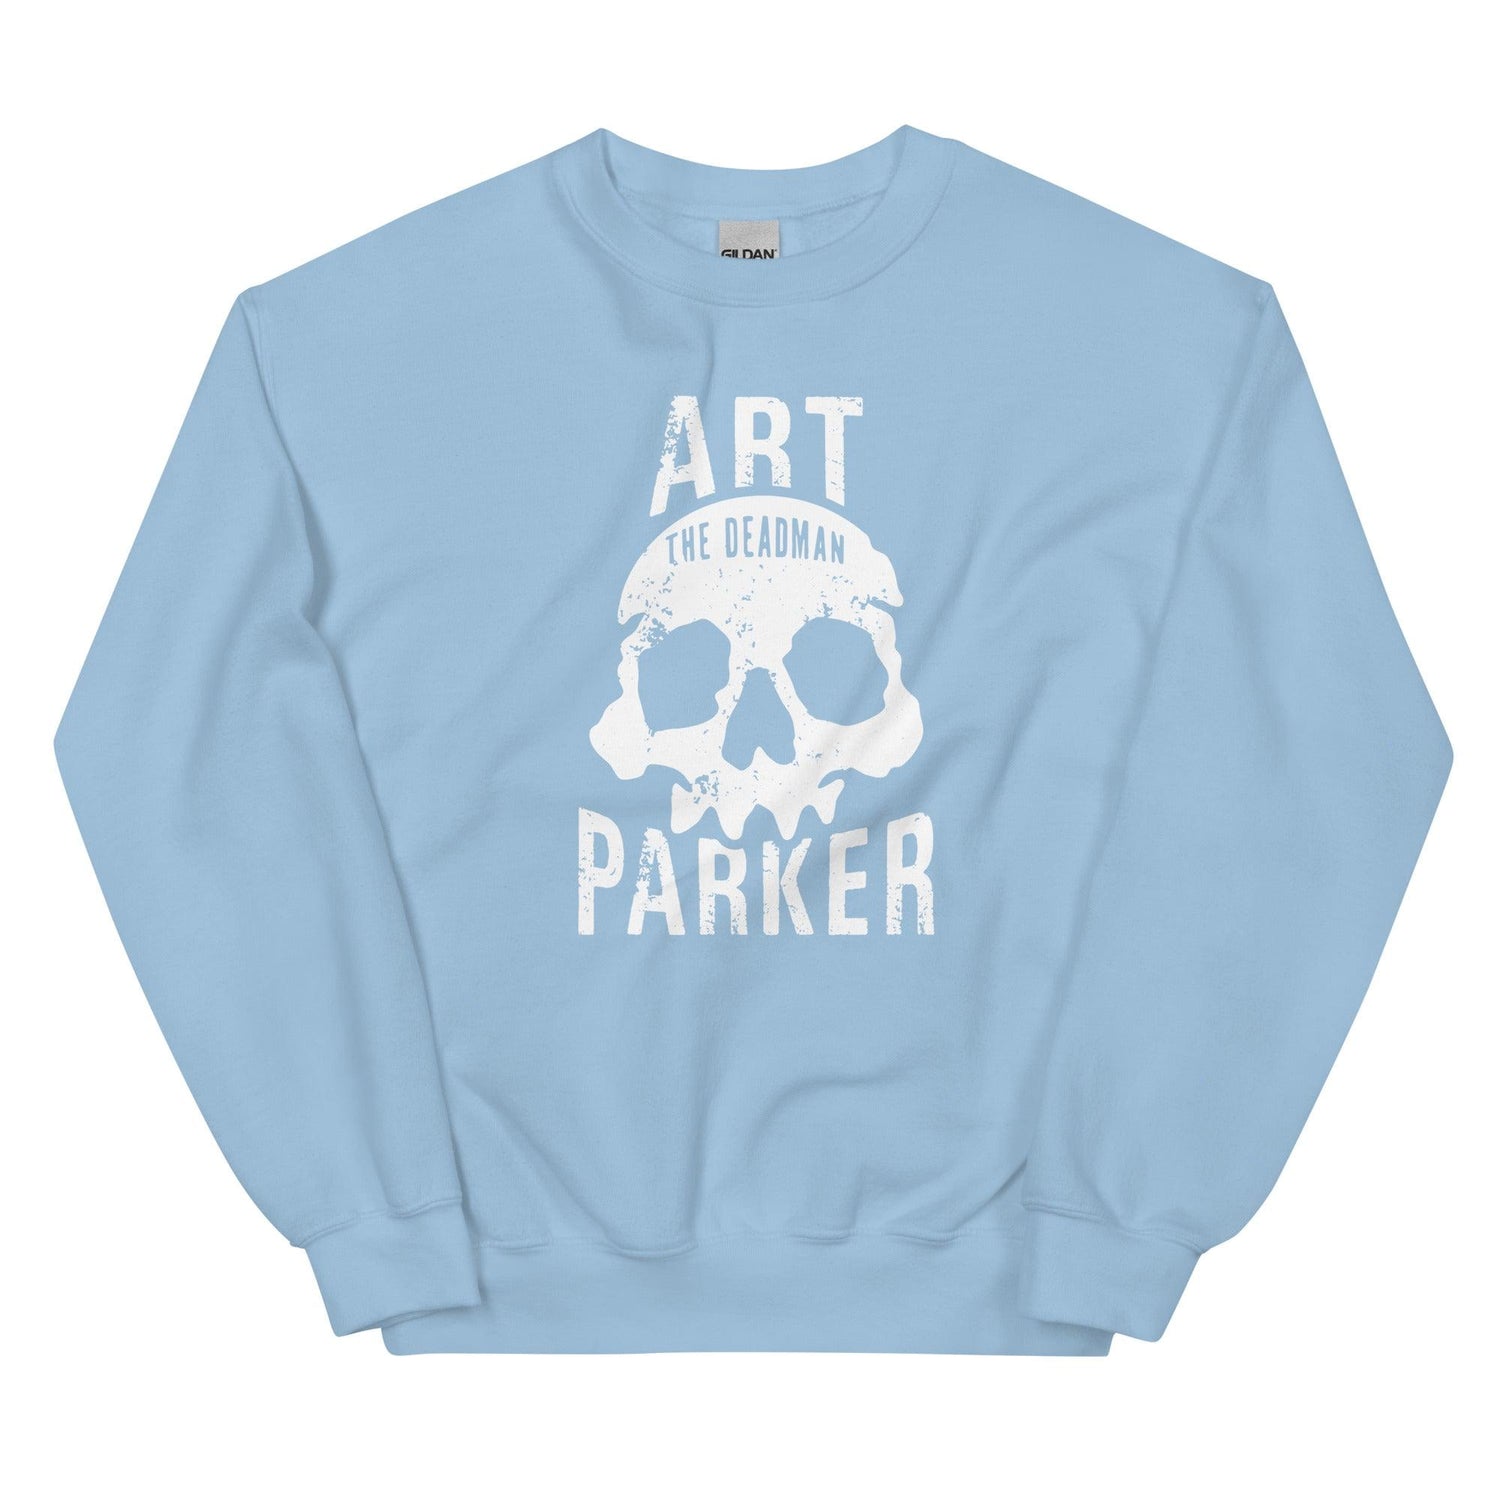 Art Parker "Deadman" Sweatshirt - Fan Arch